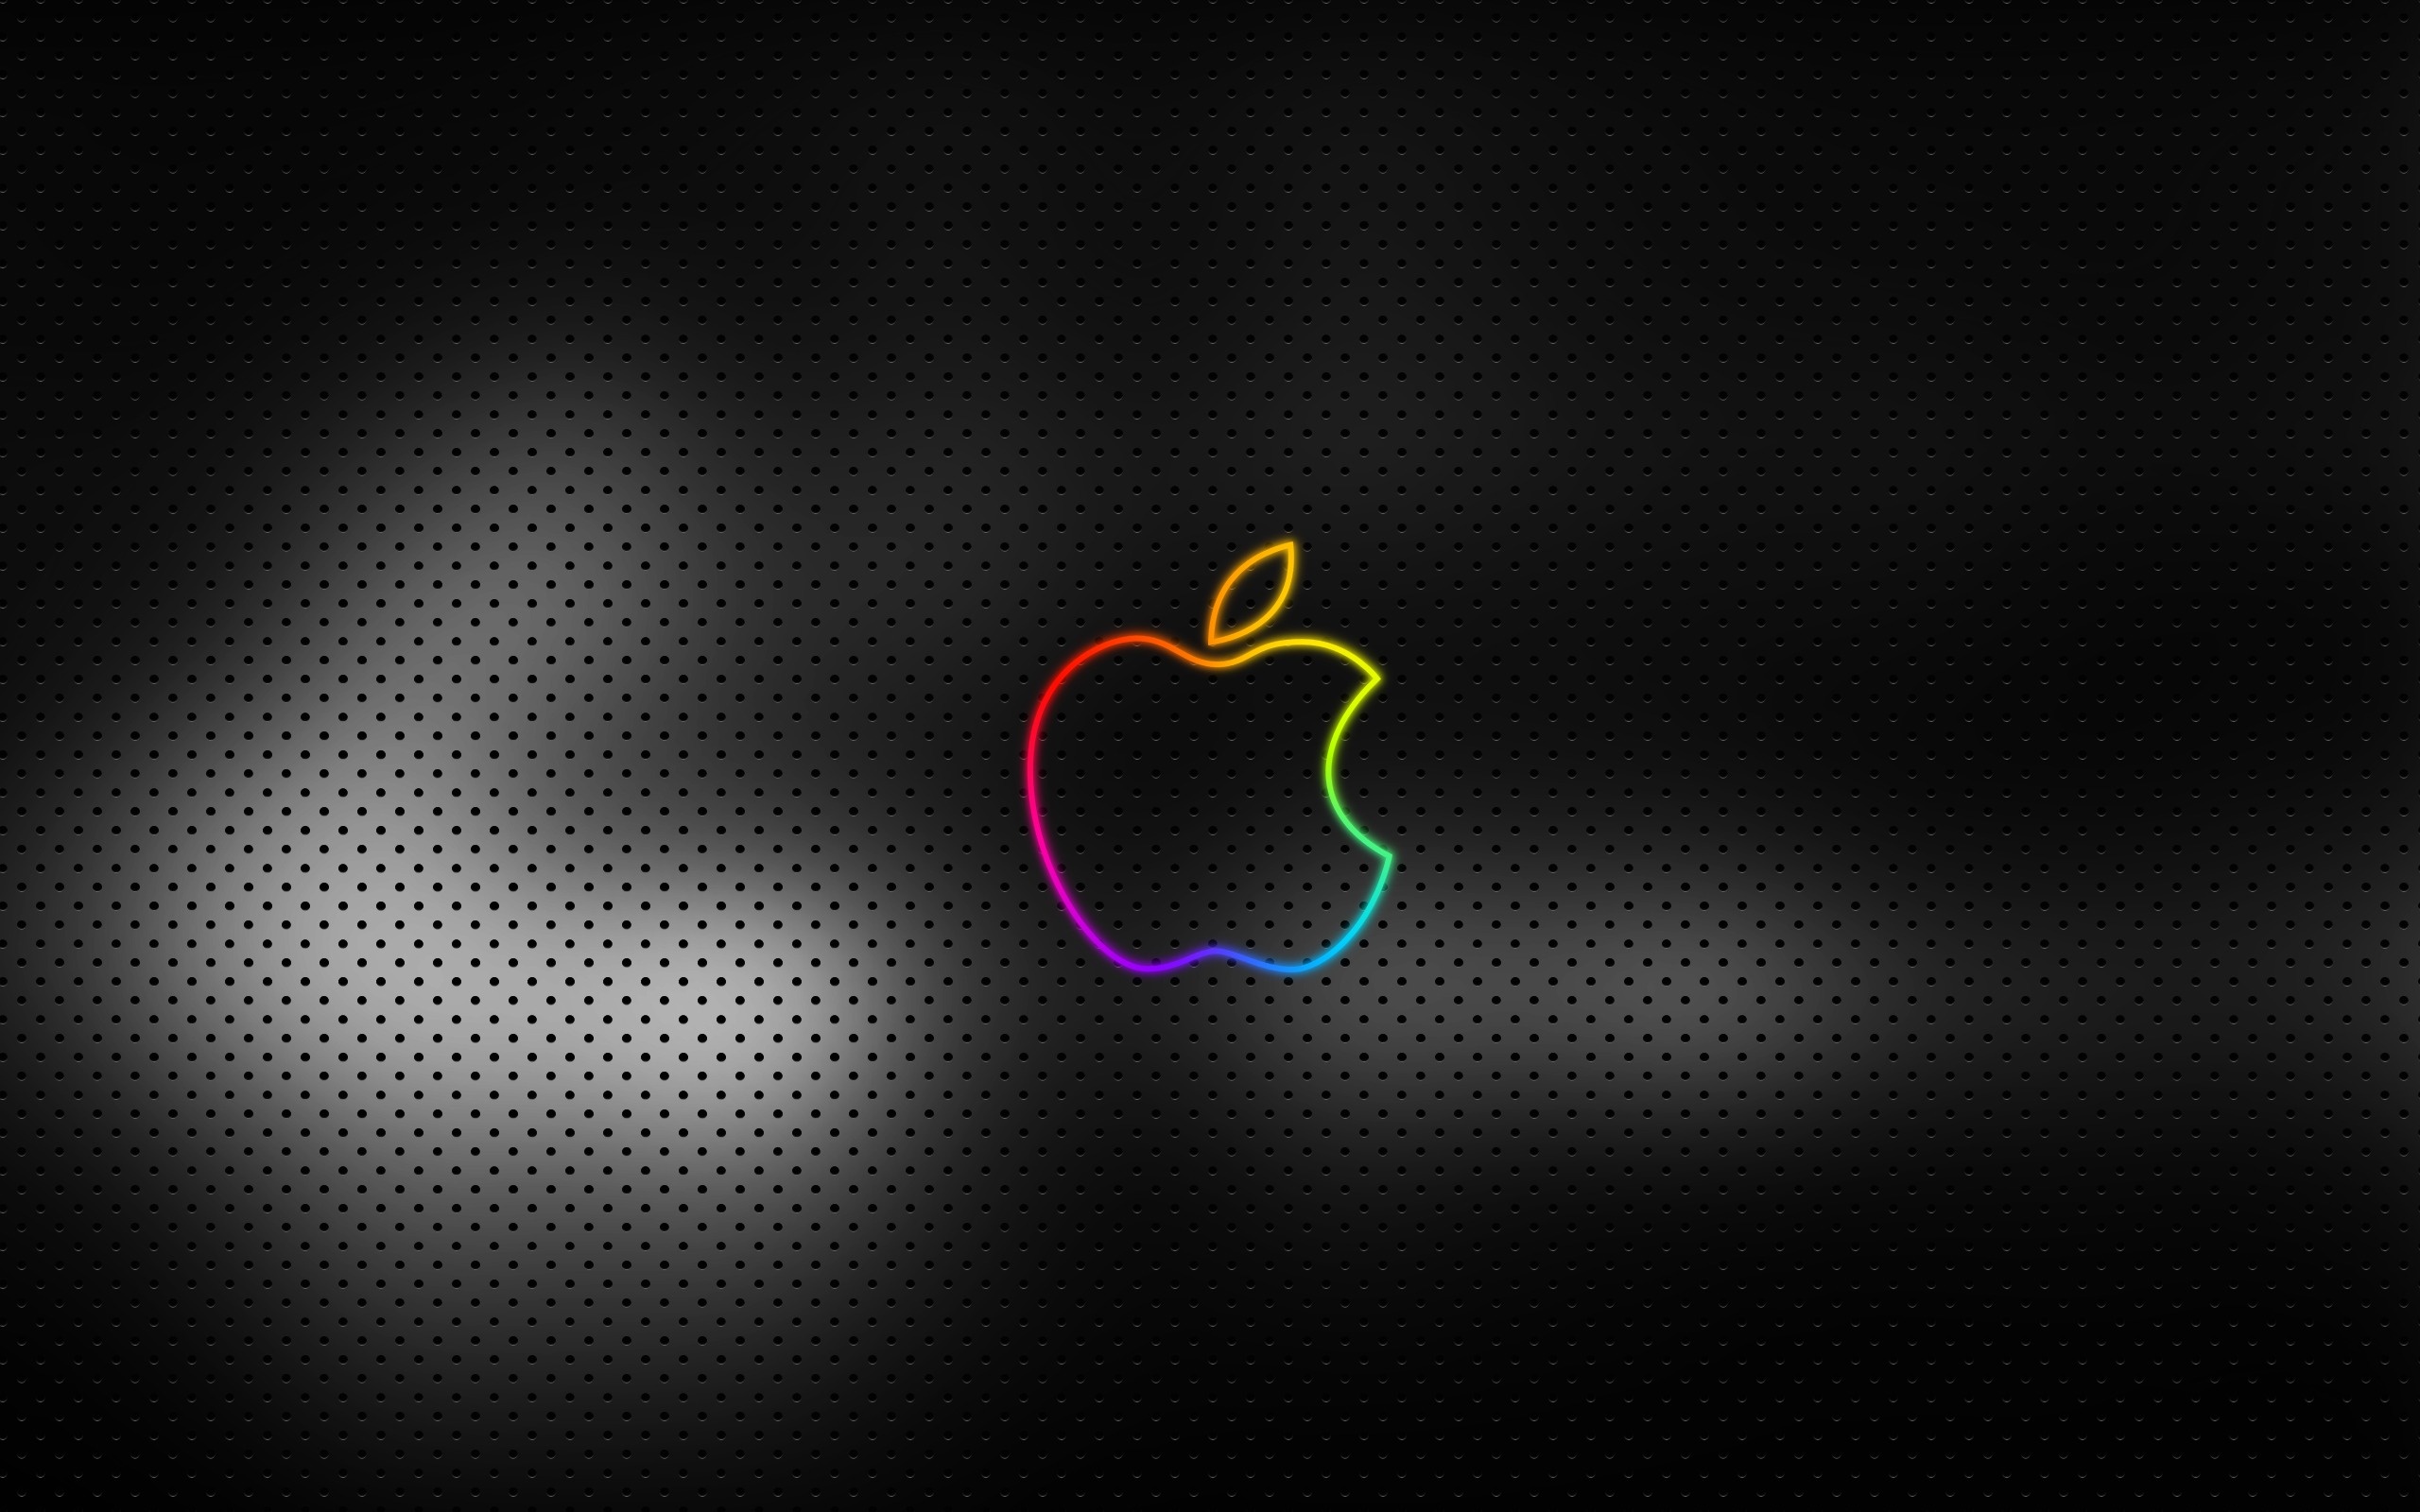 iMac logo wallpaper, Creative visuals, Apple computer wallpaper, Unique design, 2560x1600 HD Desktop